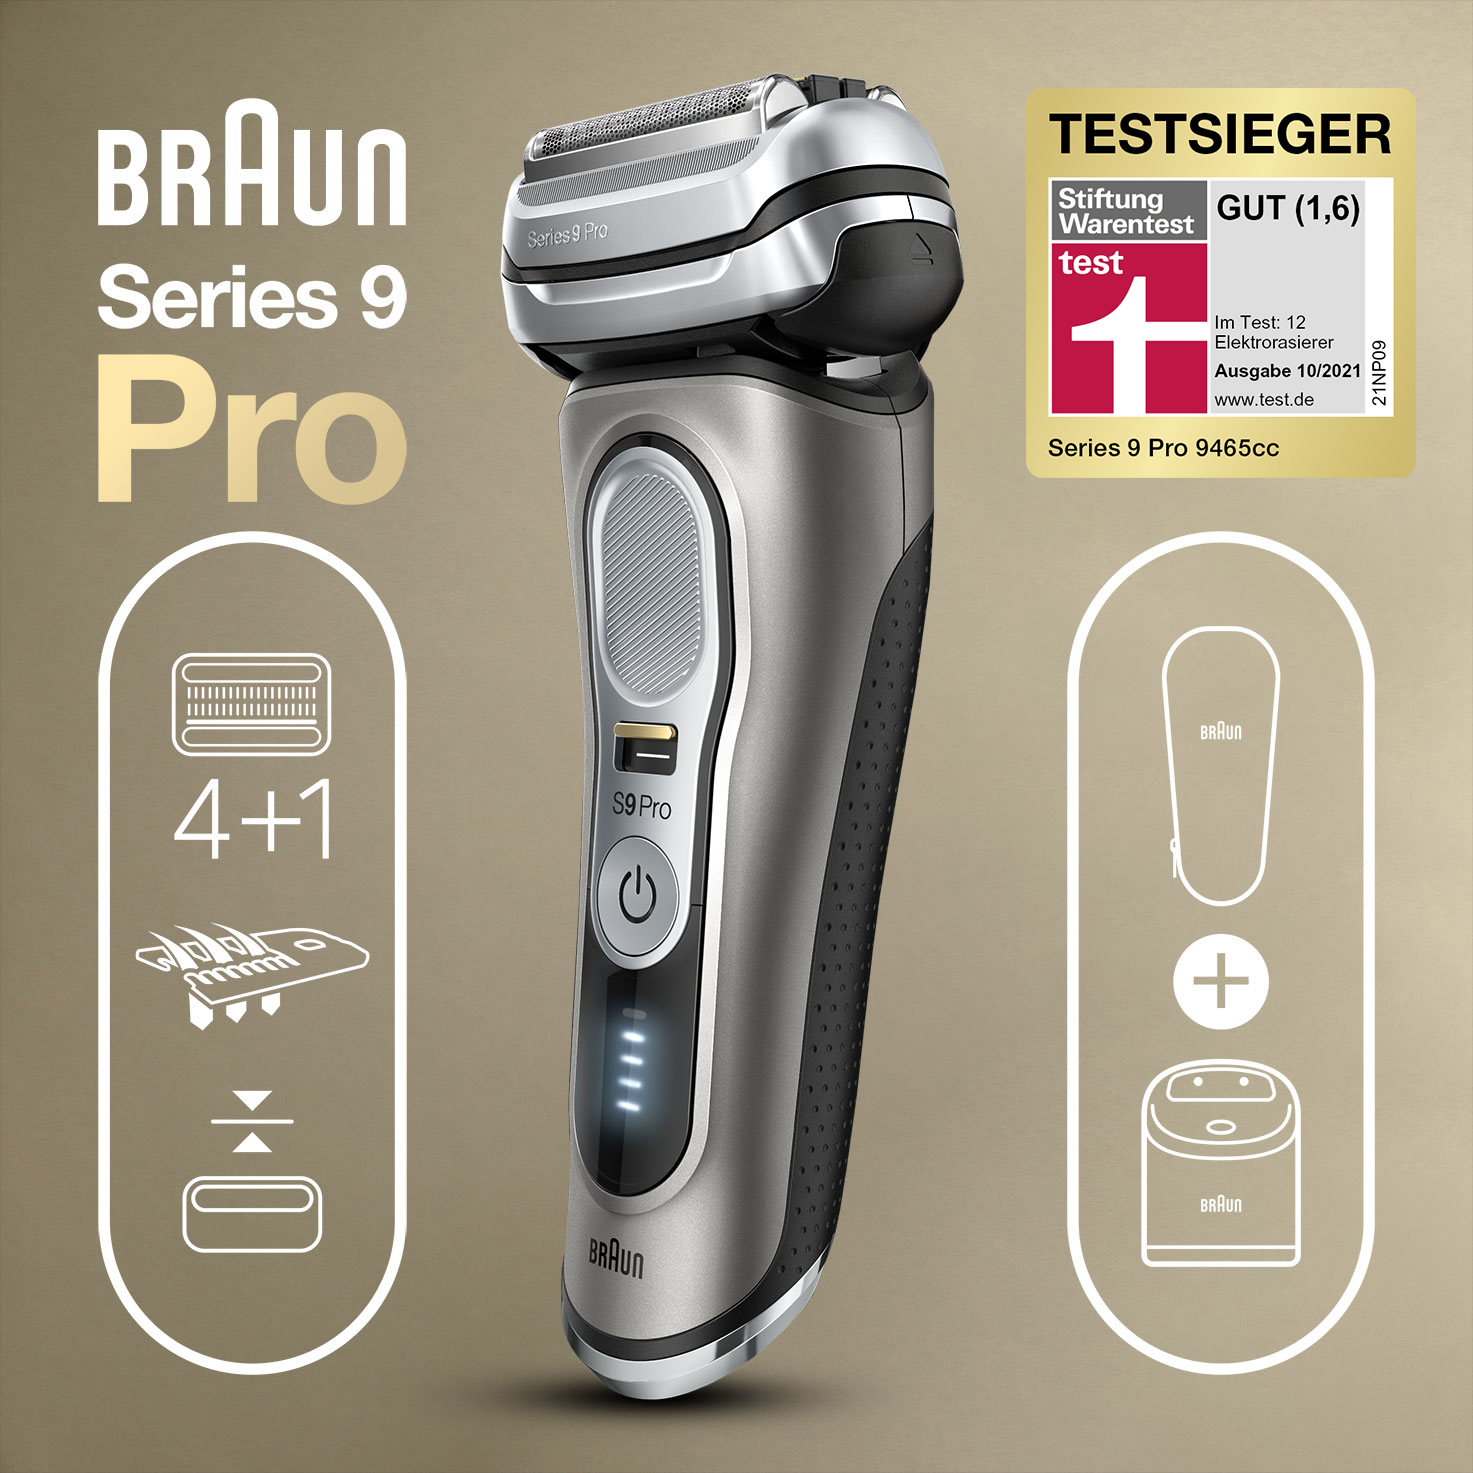 Braun Series 9 Pro holt bei Stiftung Warentest den Testsieg - CE-Markt